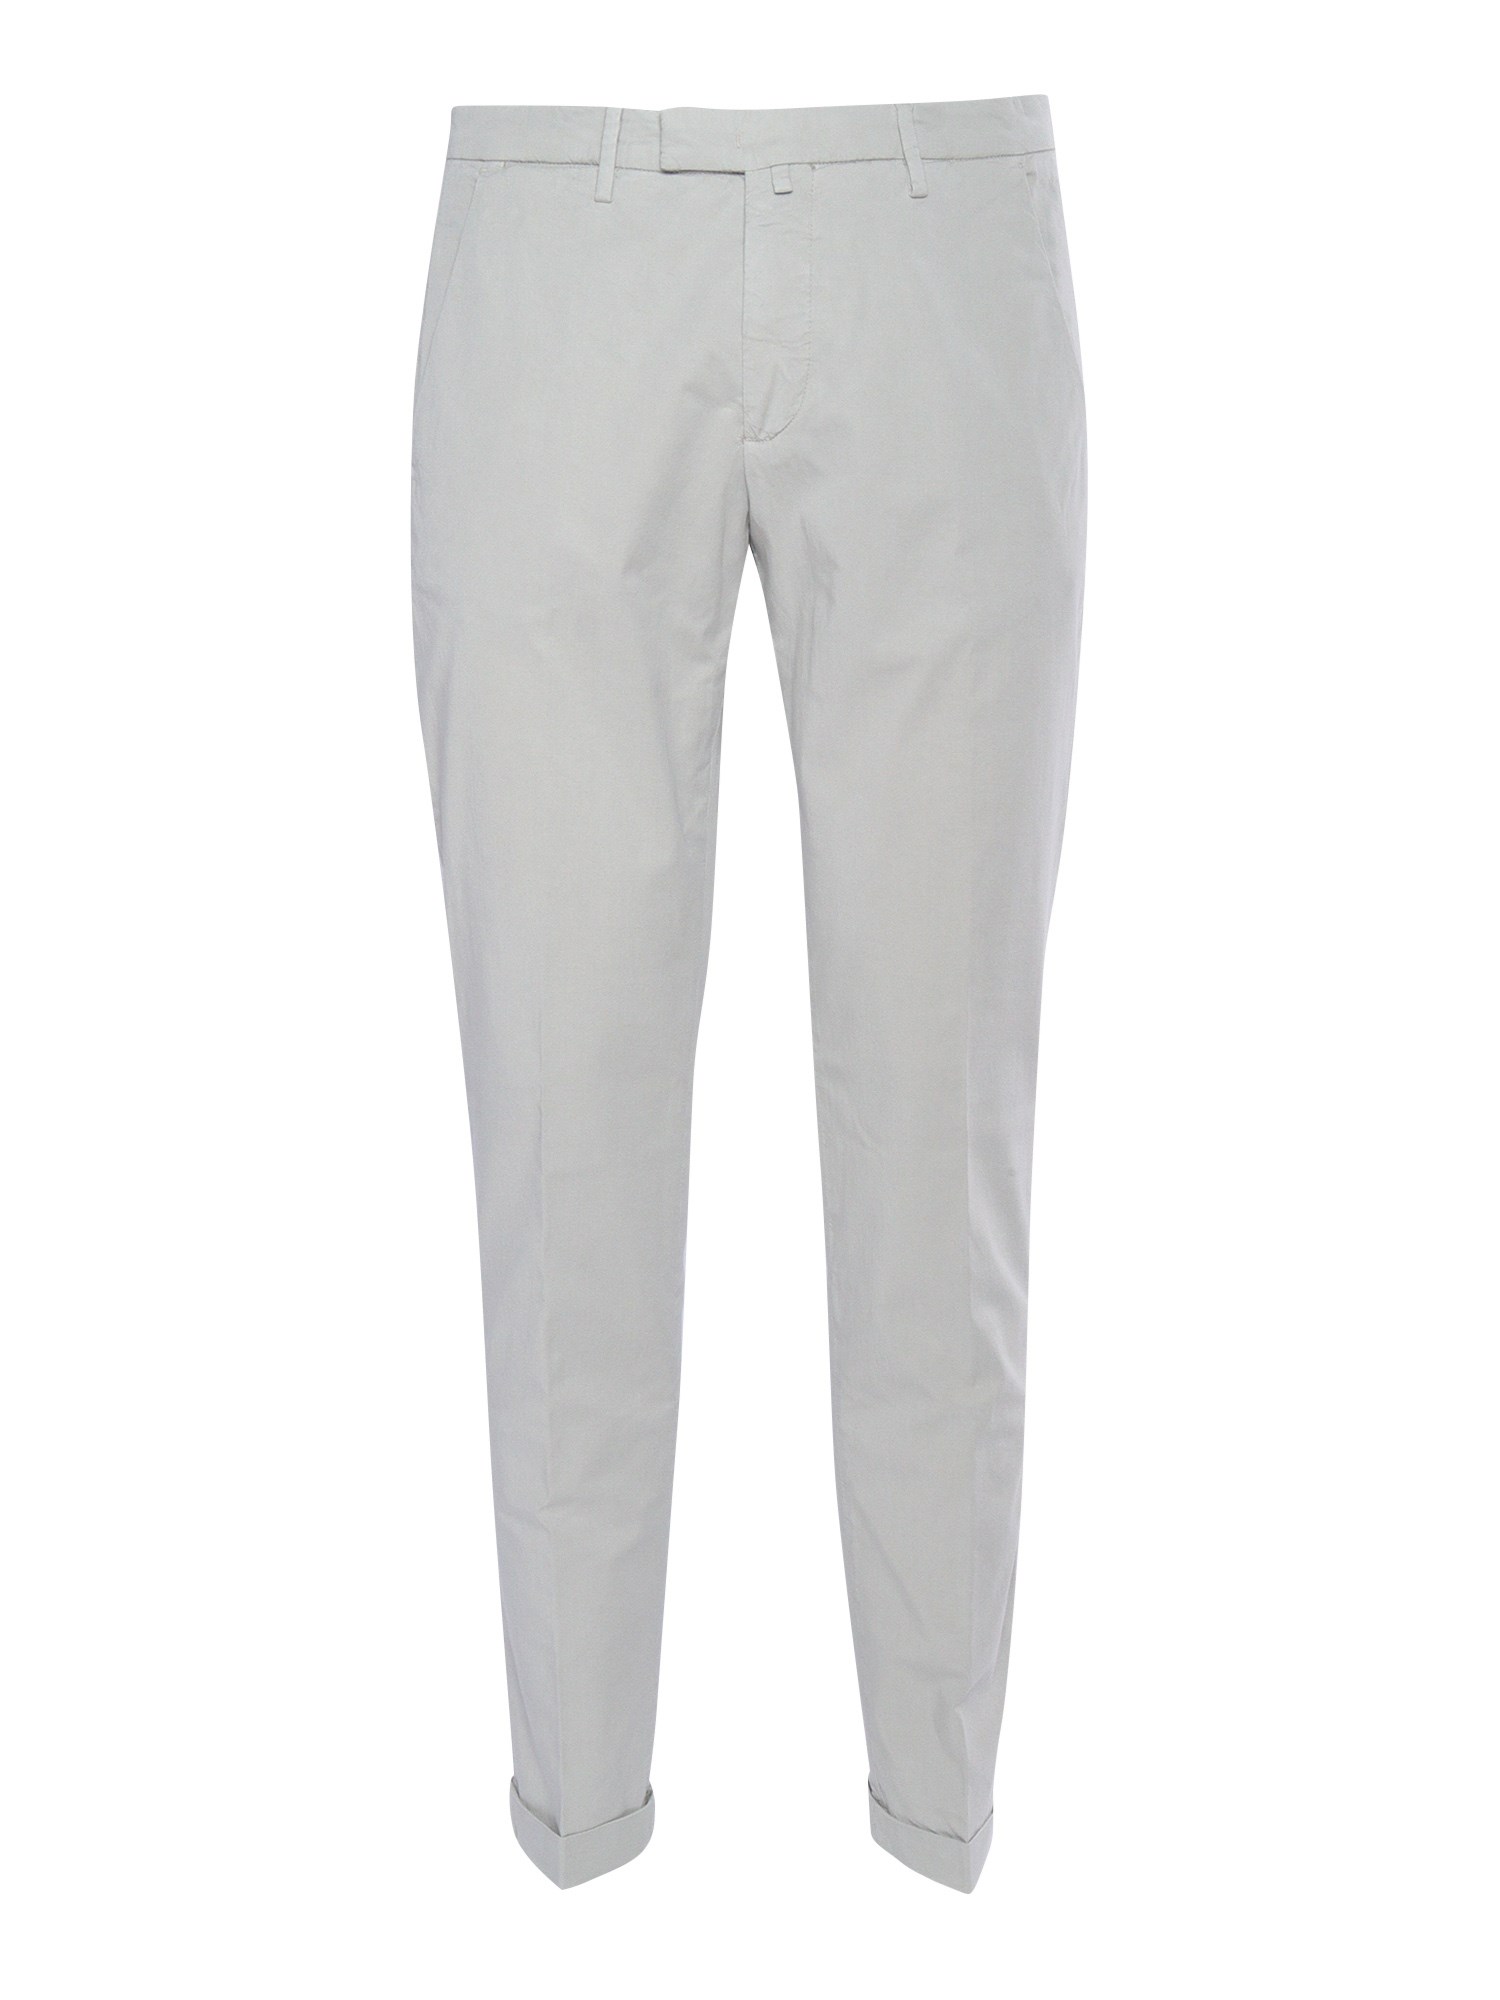 Briglia Elegant White Trousers In Gray